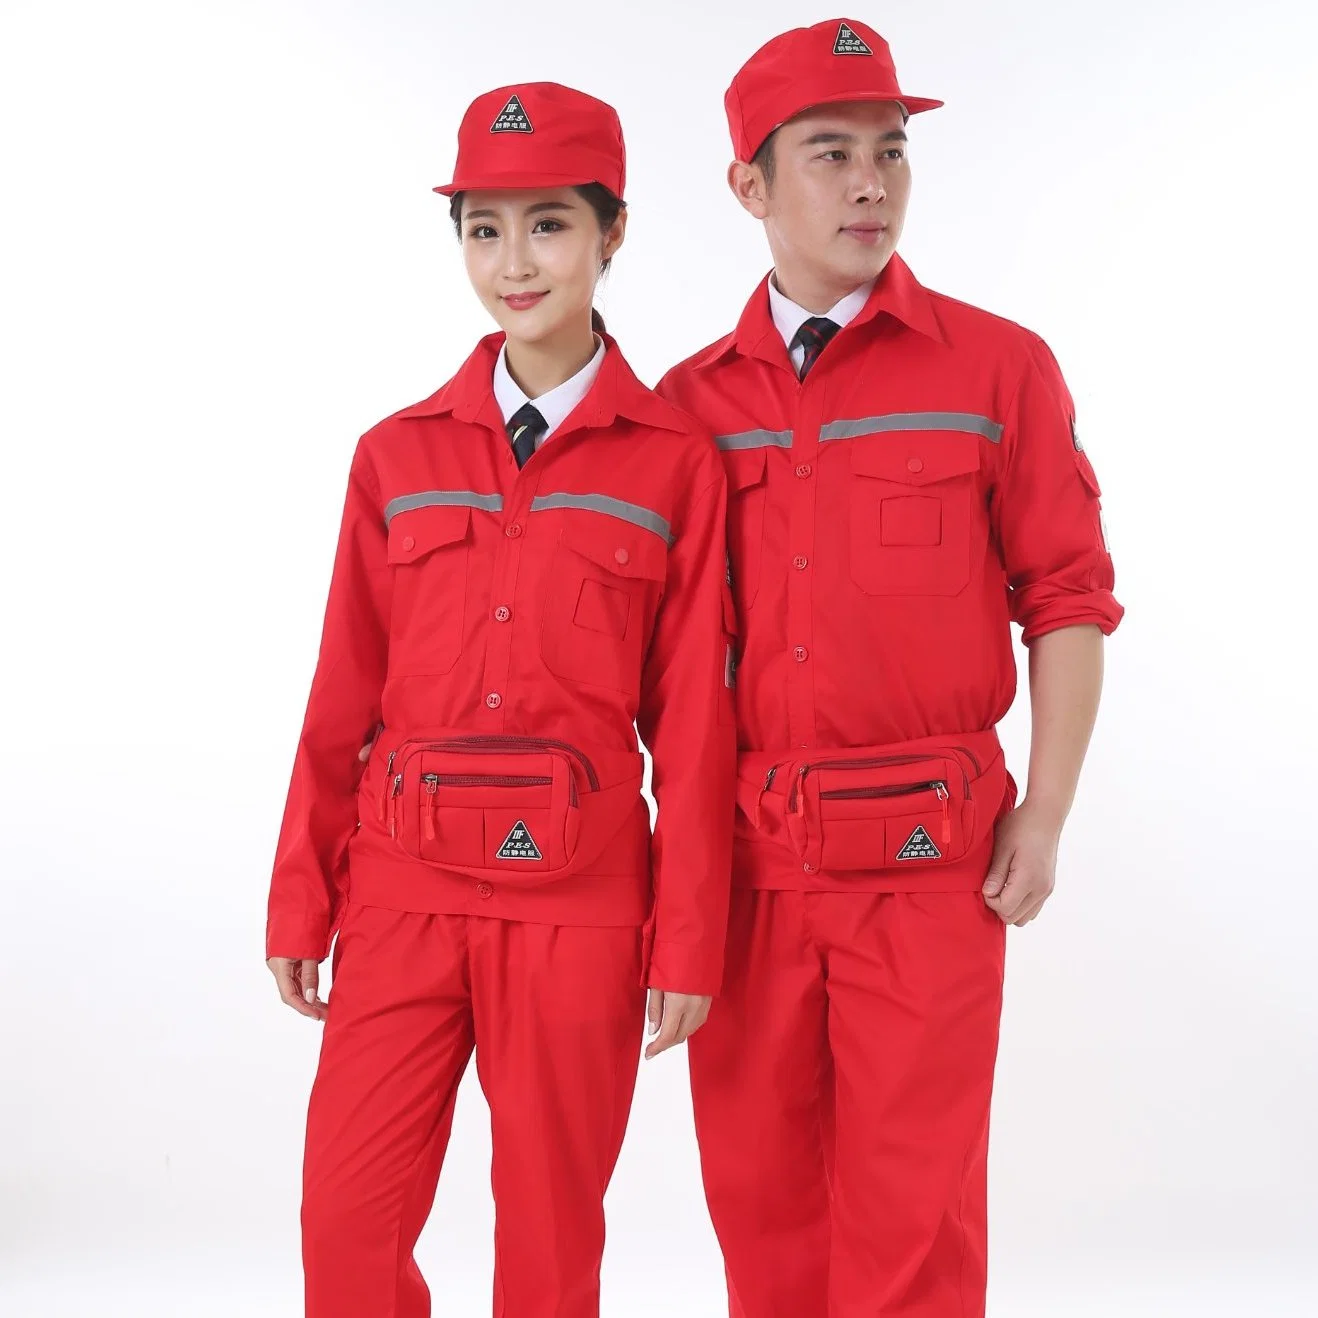 Miner Suit Factory Antistatik Kleidung Arbeitsshirt Anzug Arbeitskleidung Mit Hut